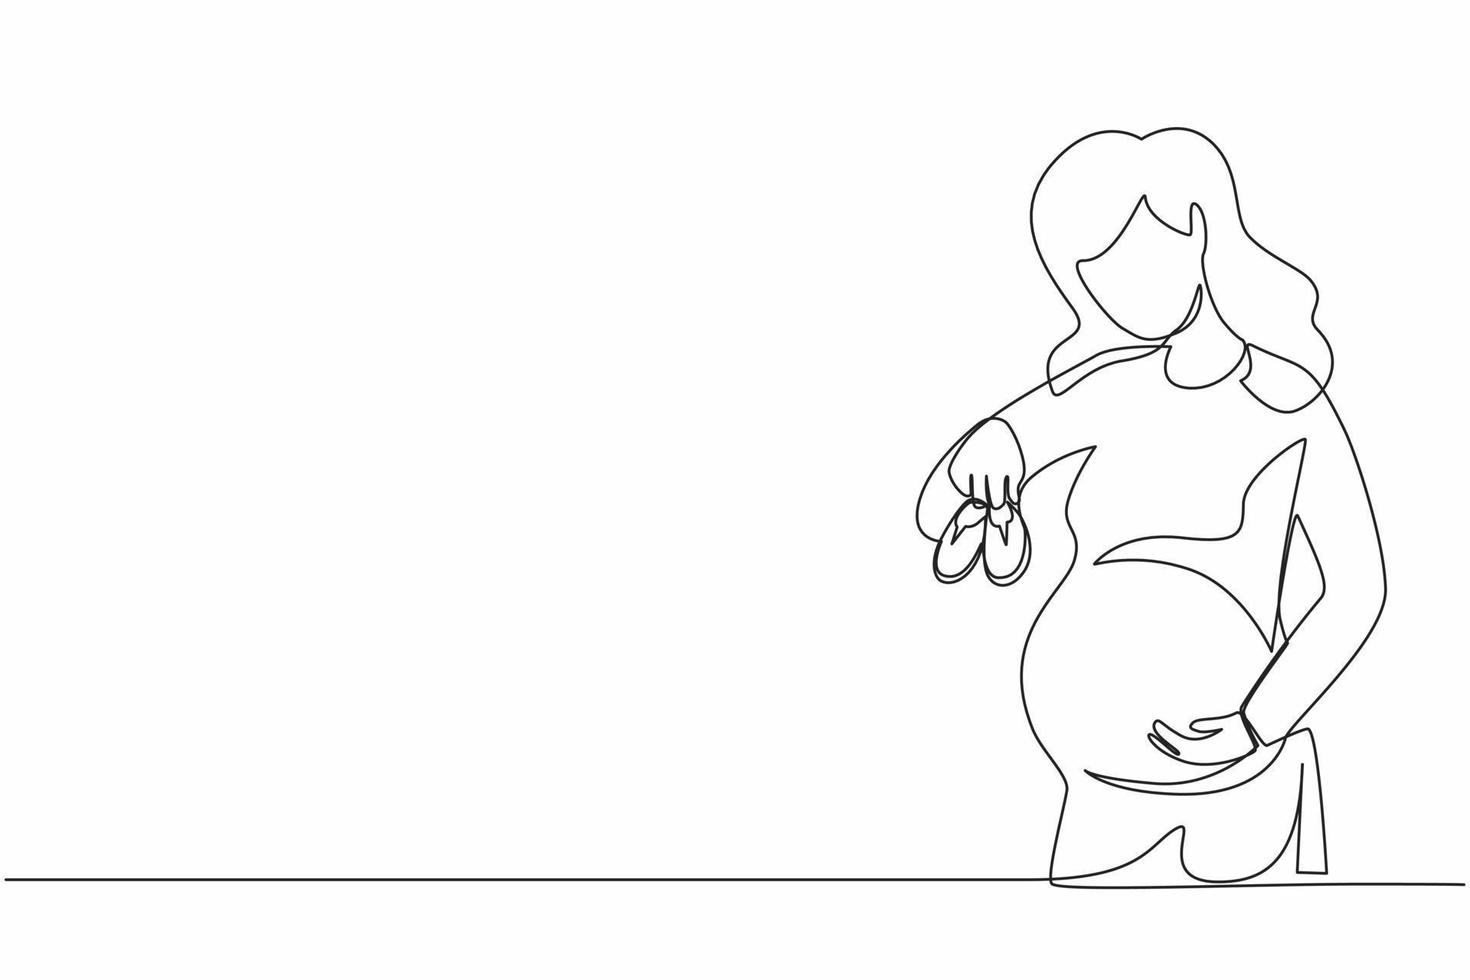 una sola línea continua dibujando zapatos pequeños para el bebé por nacer en el vientre de la mujer embarazada. mujer embarazada sosteniendo pequeños zapatos de bebé relajándose en casa en el dormitorio. vector de diseño gráfico de dibujo dinámico de una línea